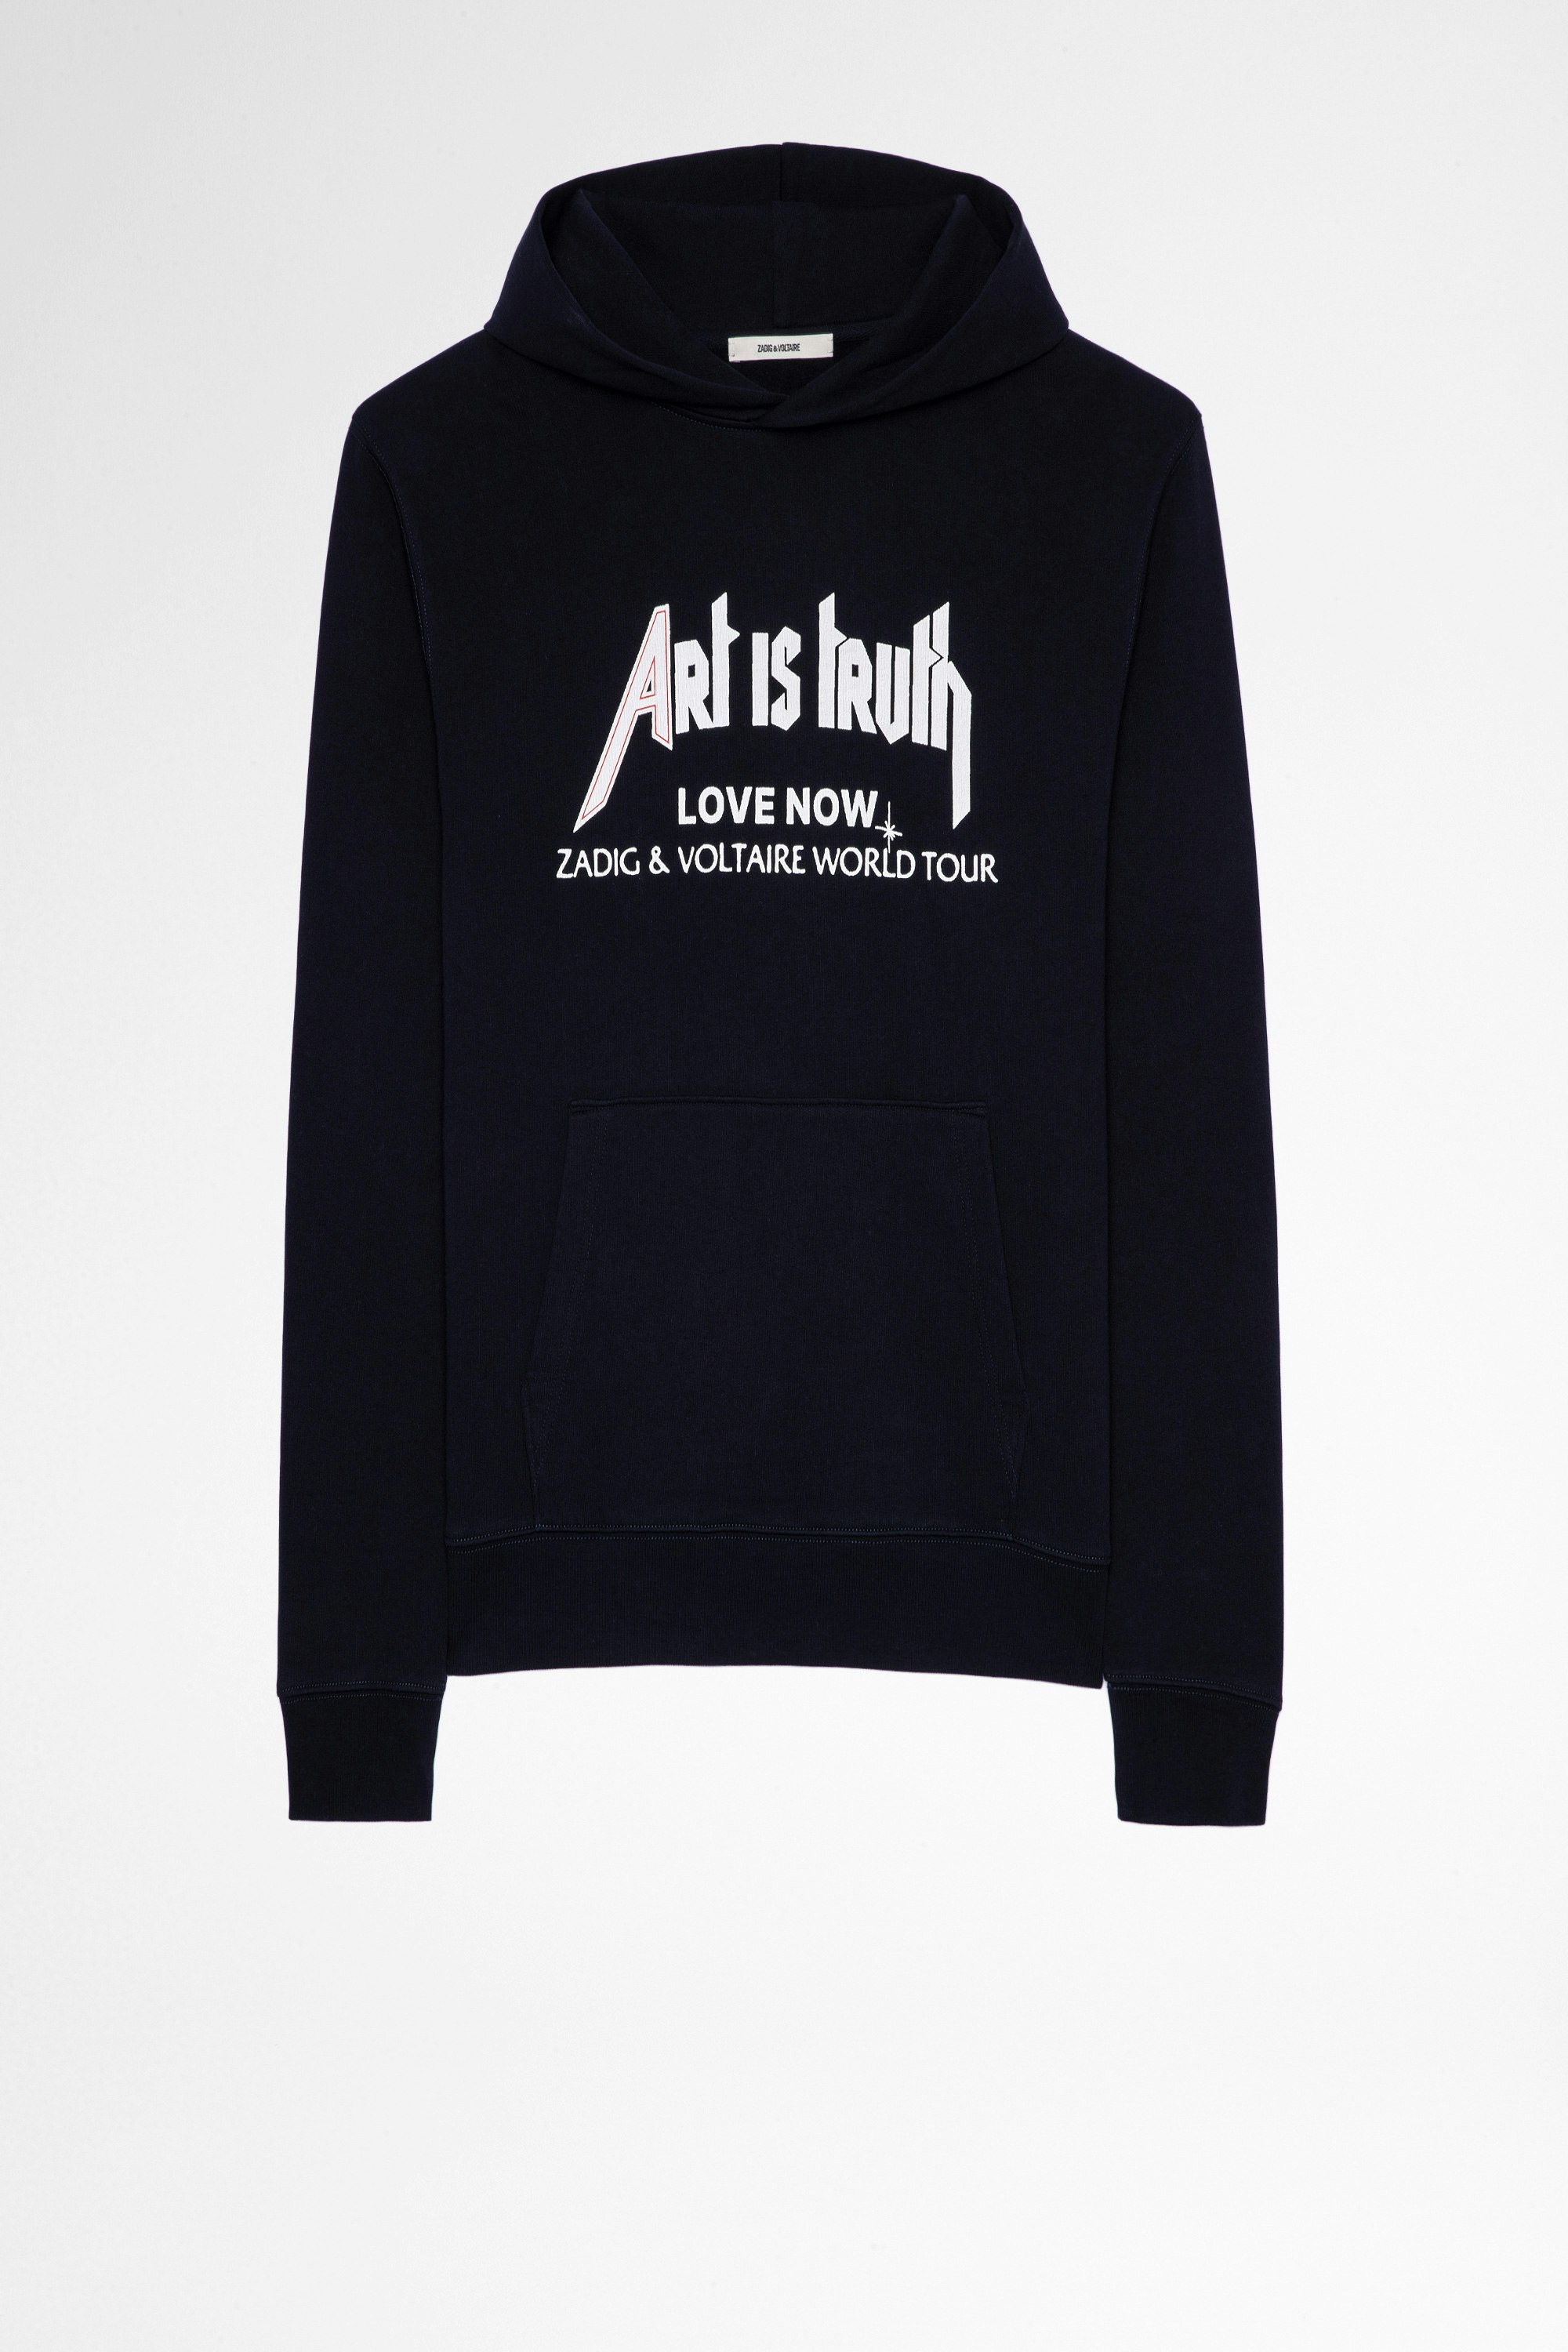 Sweatshirt Sanchi Herren-Hoodie mit Art is truth-Print. Hergestellt mit Fasern aus biologischem Anbau